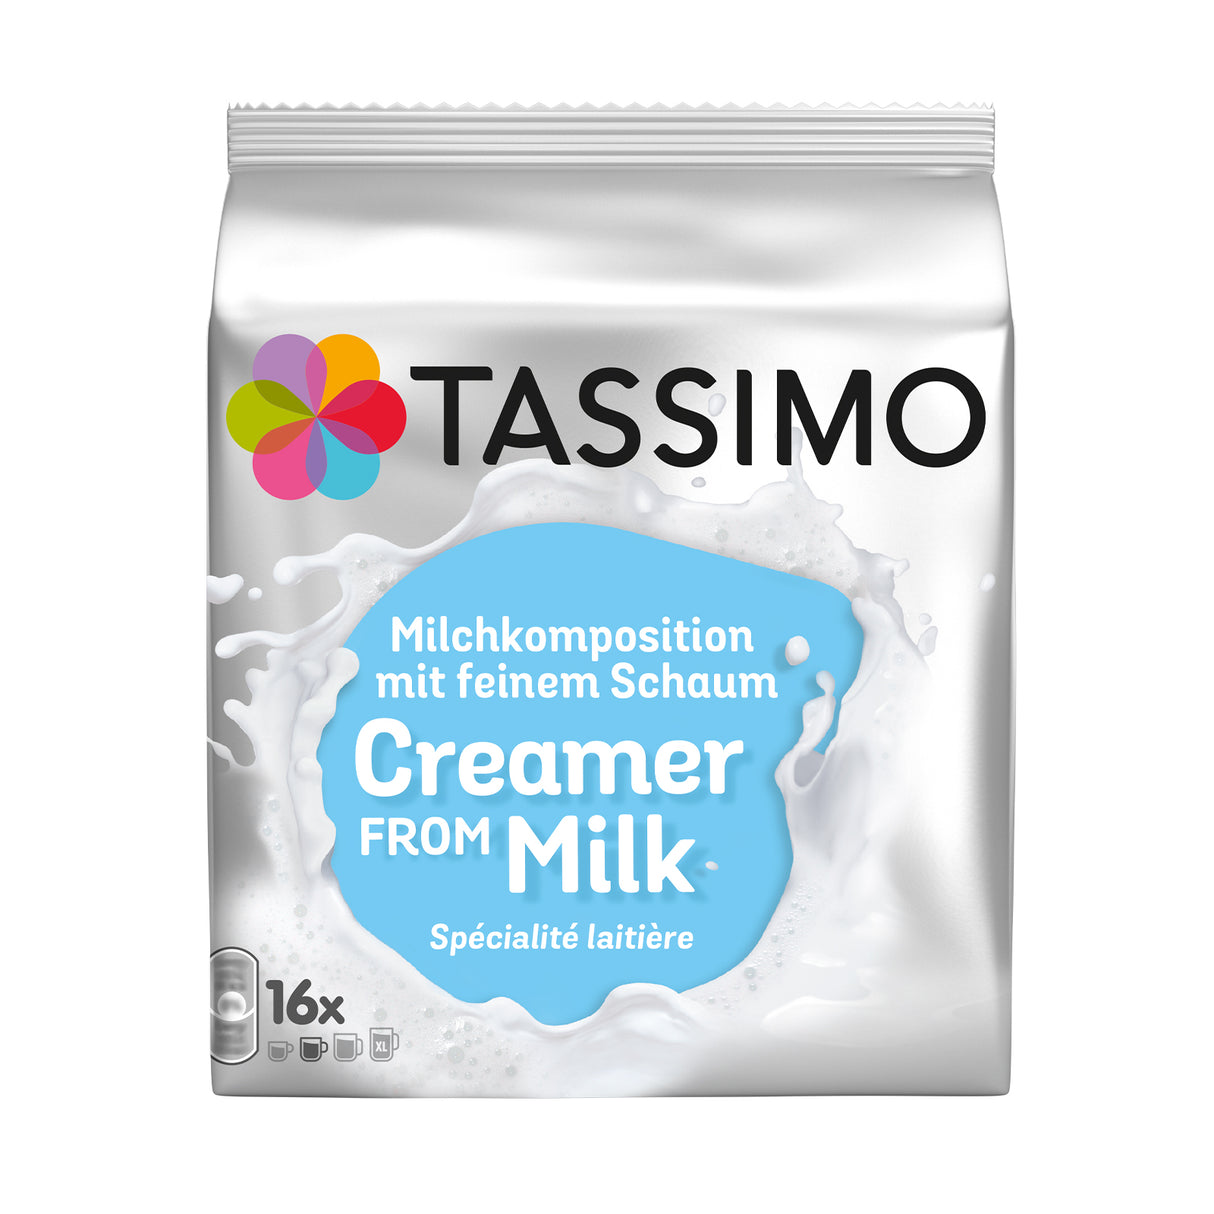 Tassimo Creamer From Milk Packet